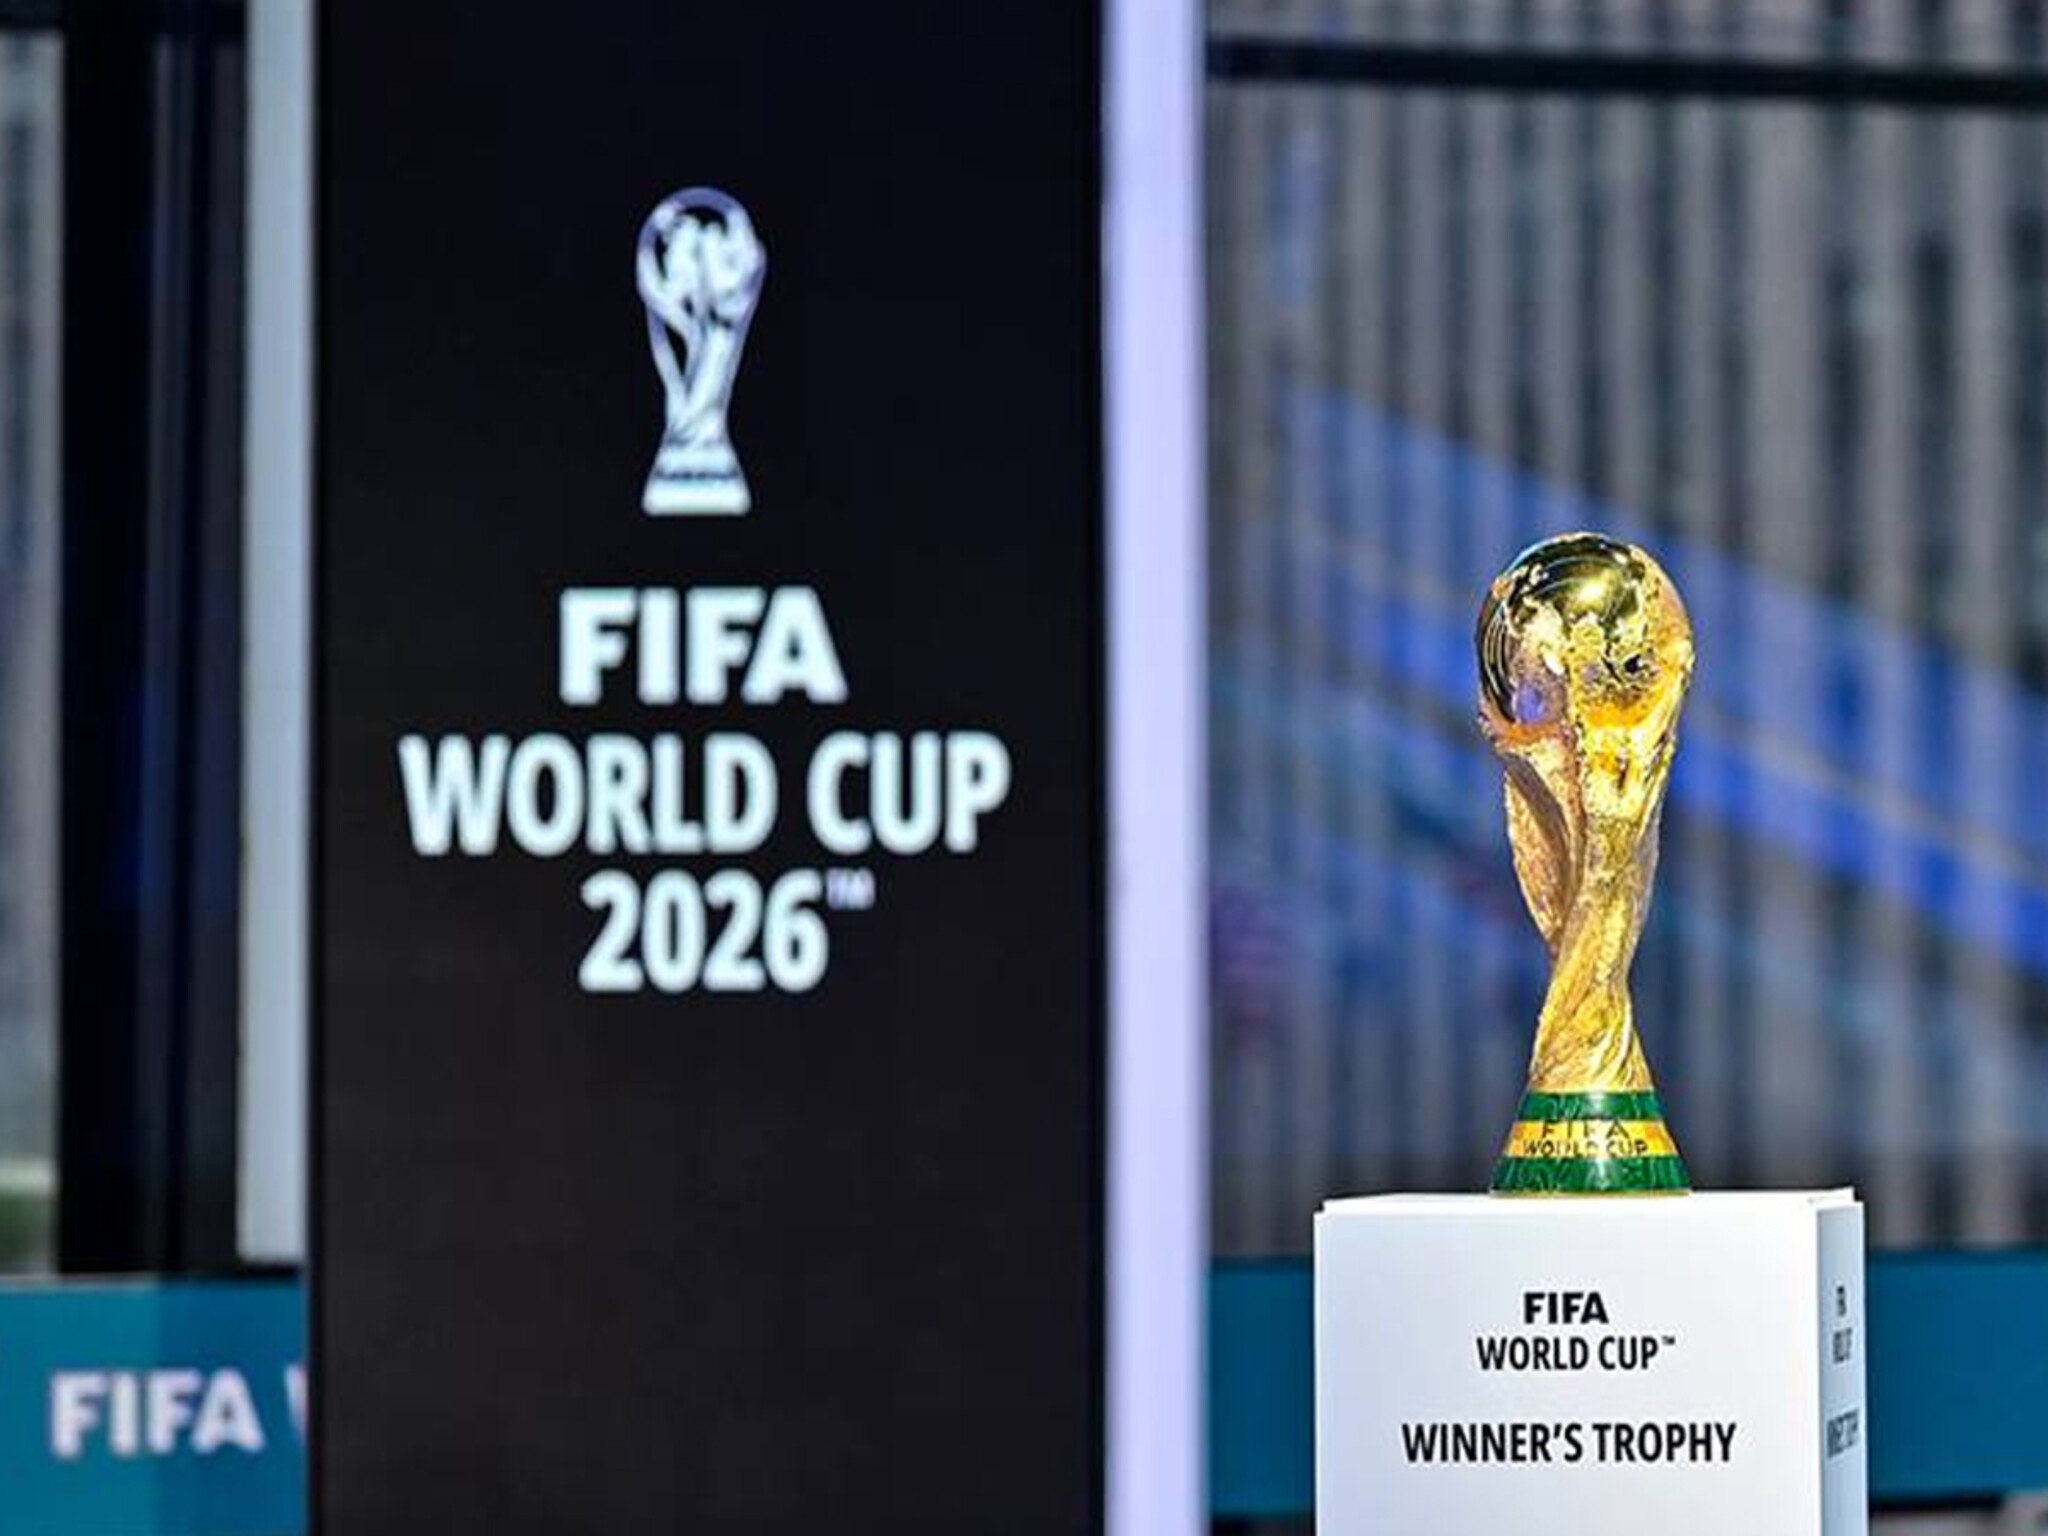 رسميًا | أعلن الاتحاد الدولي لكرة القدم موعد افتتاح بطولة كأس العالم ( 2026 )